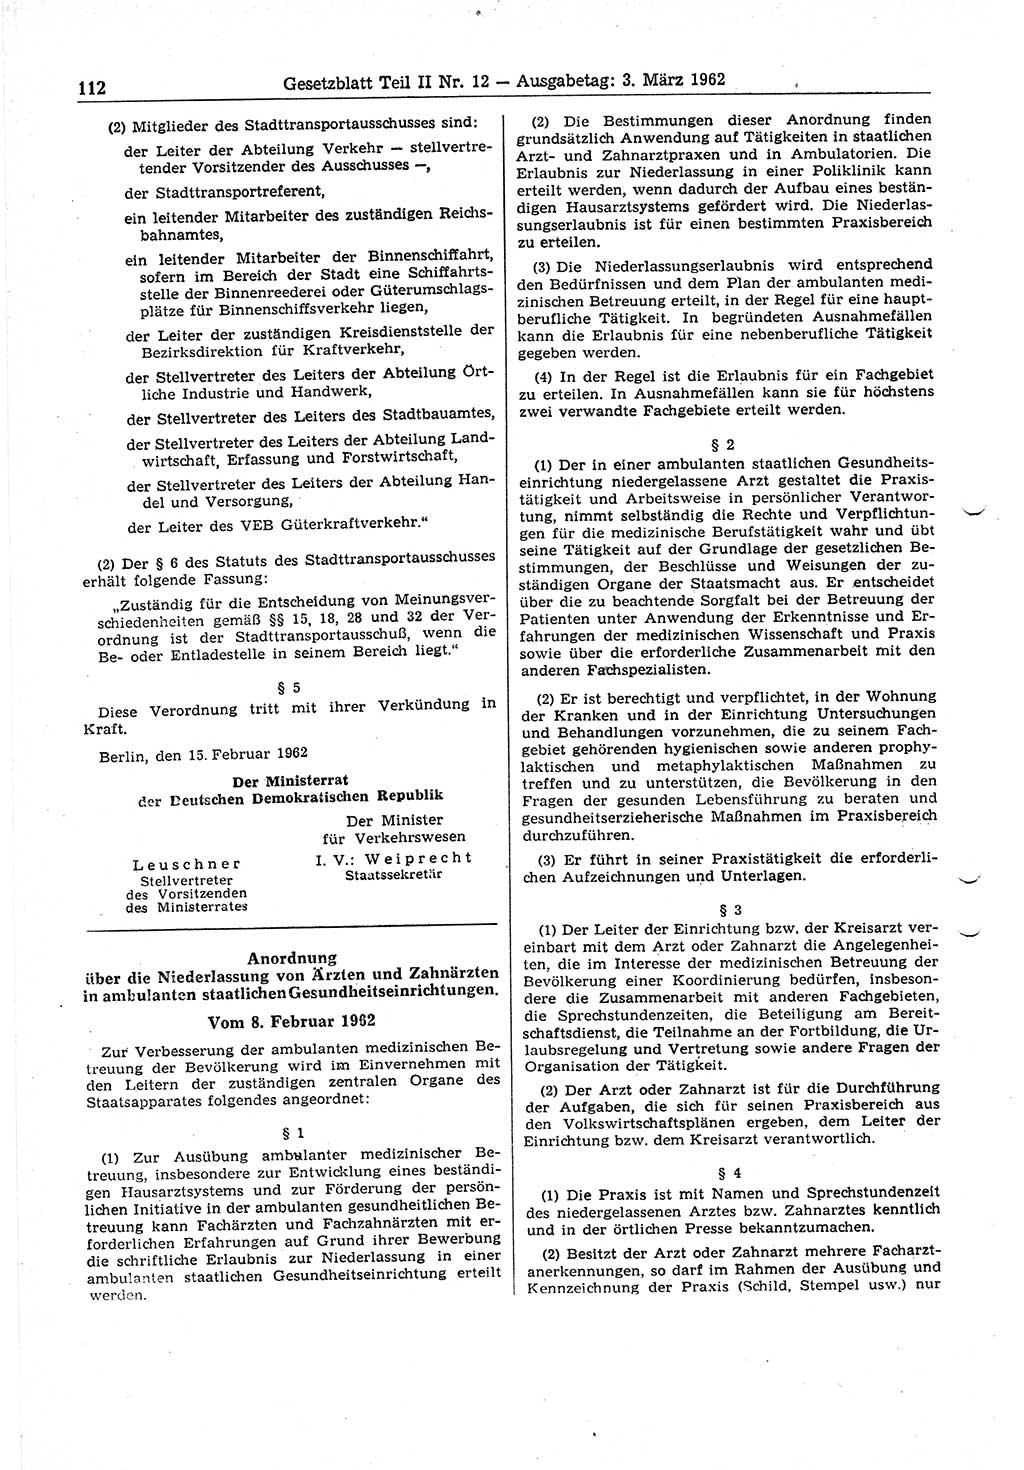 Gesetzblatt (GBl.) der Deutschen Demokratischen Republik (DDR) Teil ⅠⅠ 1962, Seite 112 (GBl. DDR ⅠⅠ 1962, S. 112)